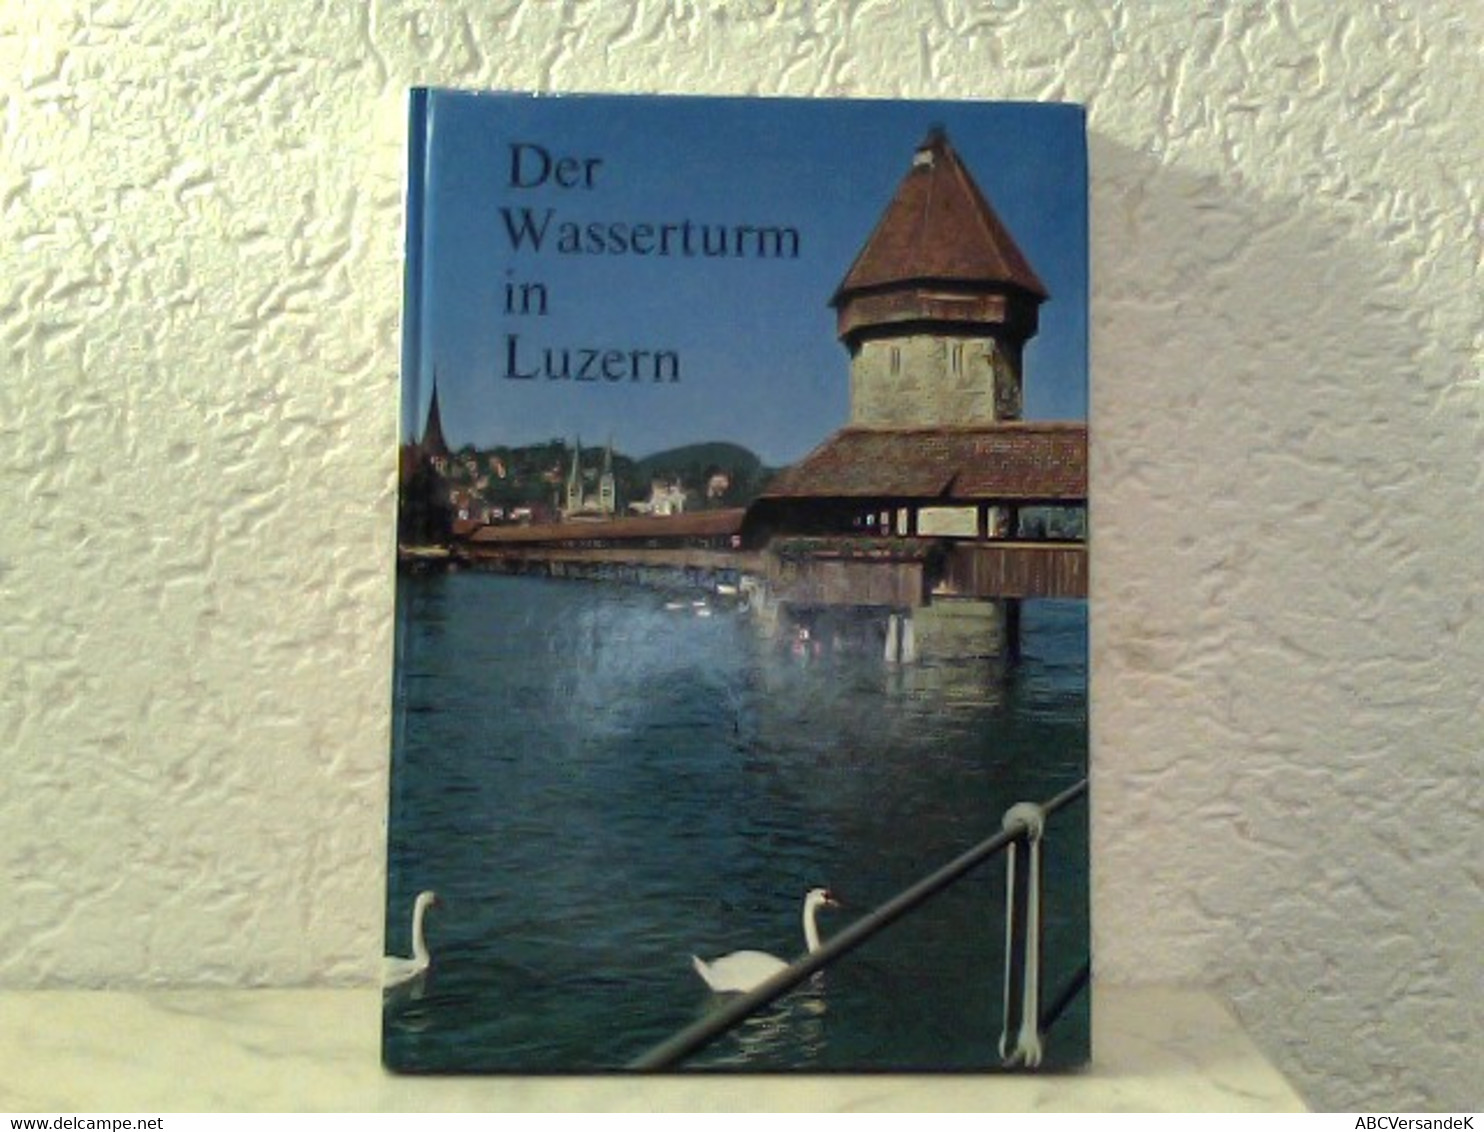 Der Wasserturm In Luzern - Herausgegeben Als Beitrag Zur 800 - Jahr - Feier Der Stadt Luzern - Suisse